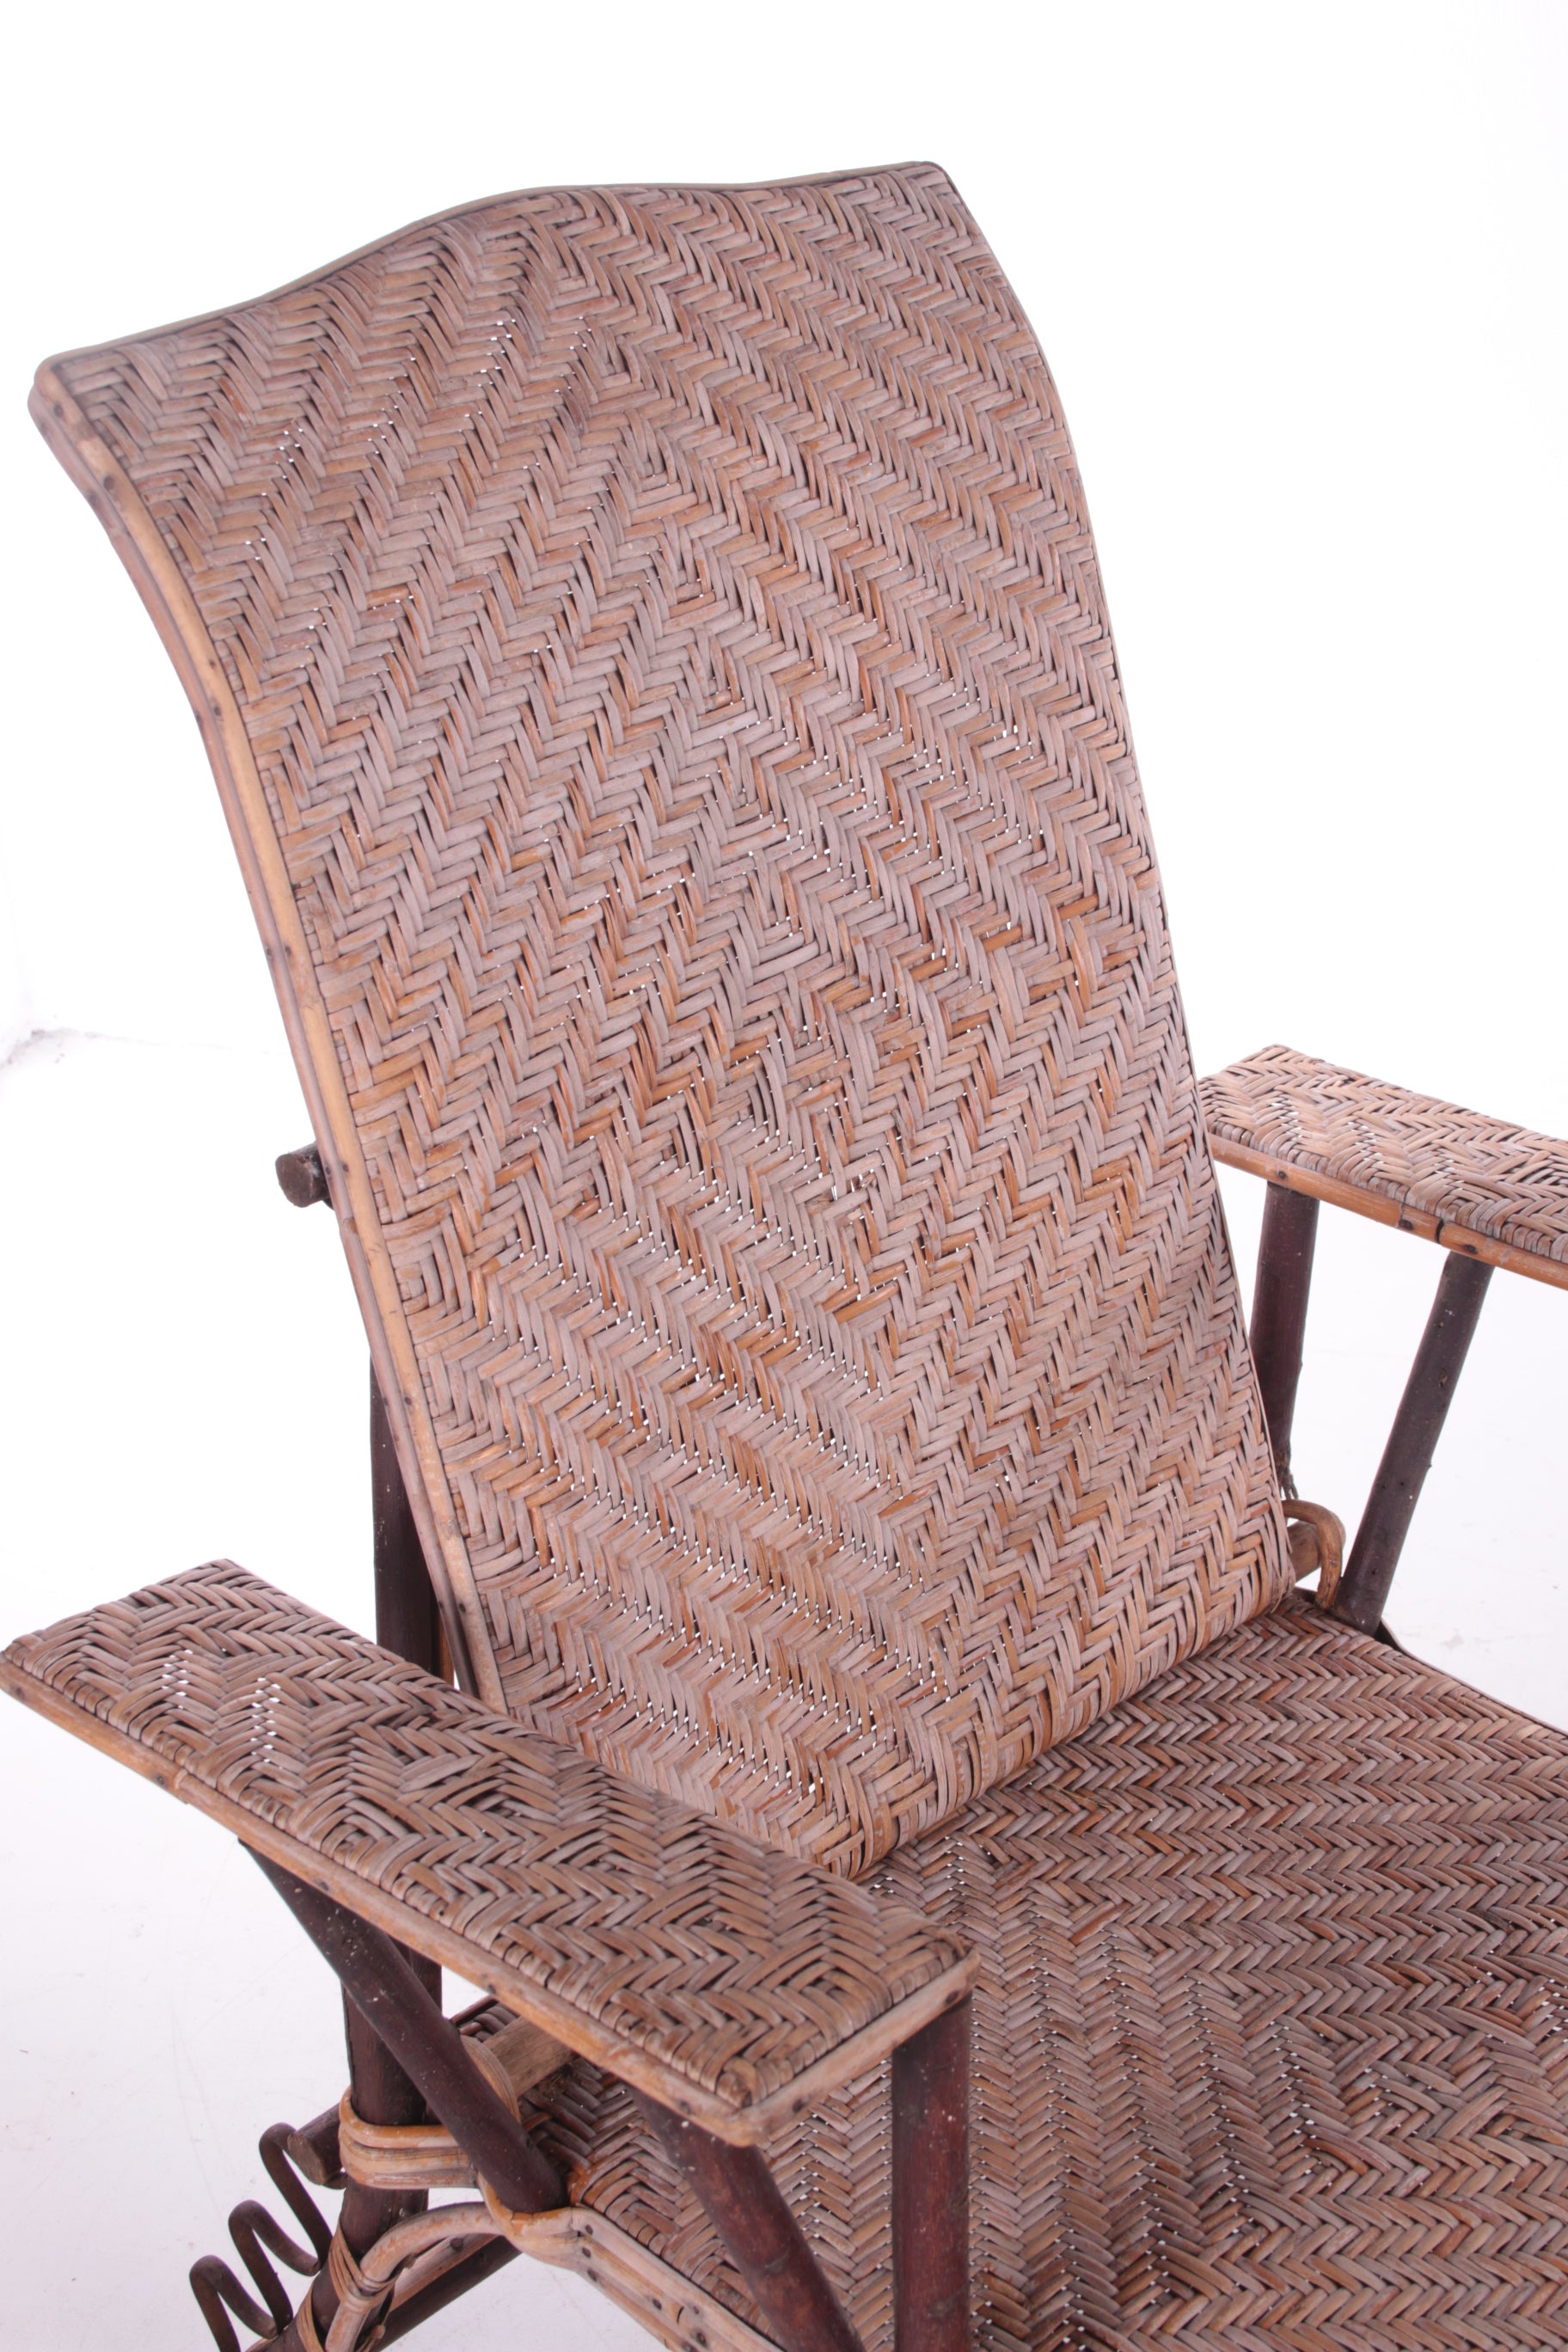 Spaanse bamboe en rieten opklapbare loungestoel uit de jaren 60 detail rugleuning